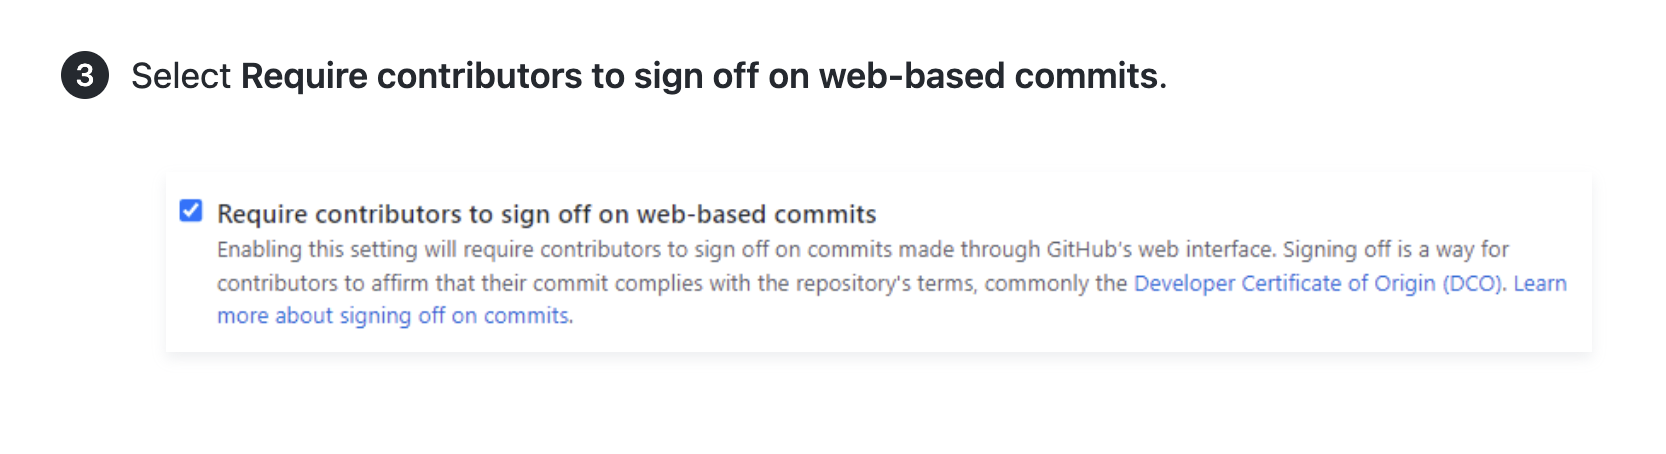 Screenshot eines Artikels mit Anweisungen und einem Screenshot der Benutzeroberfläche für die Anforderung an Mitwirkende, webbasierte Commits abzuzeichnen